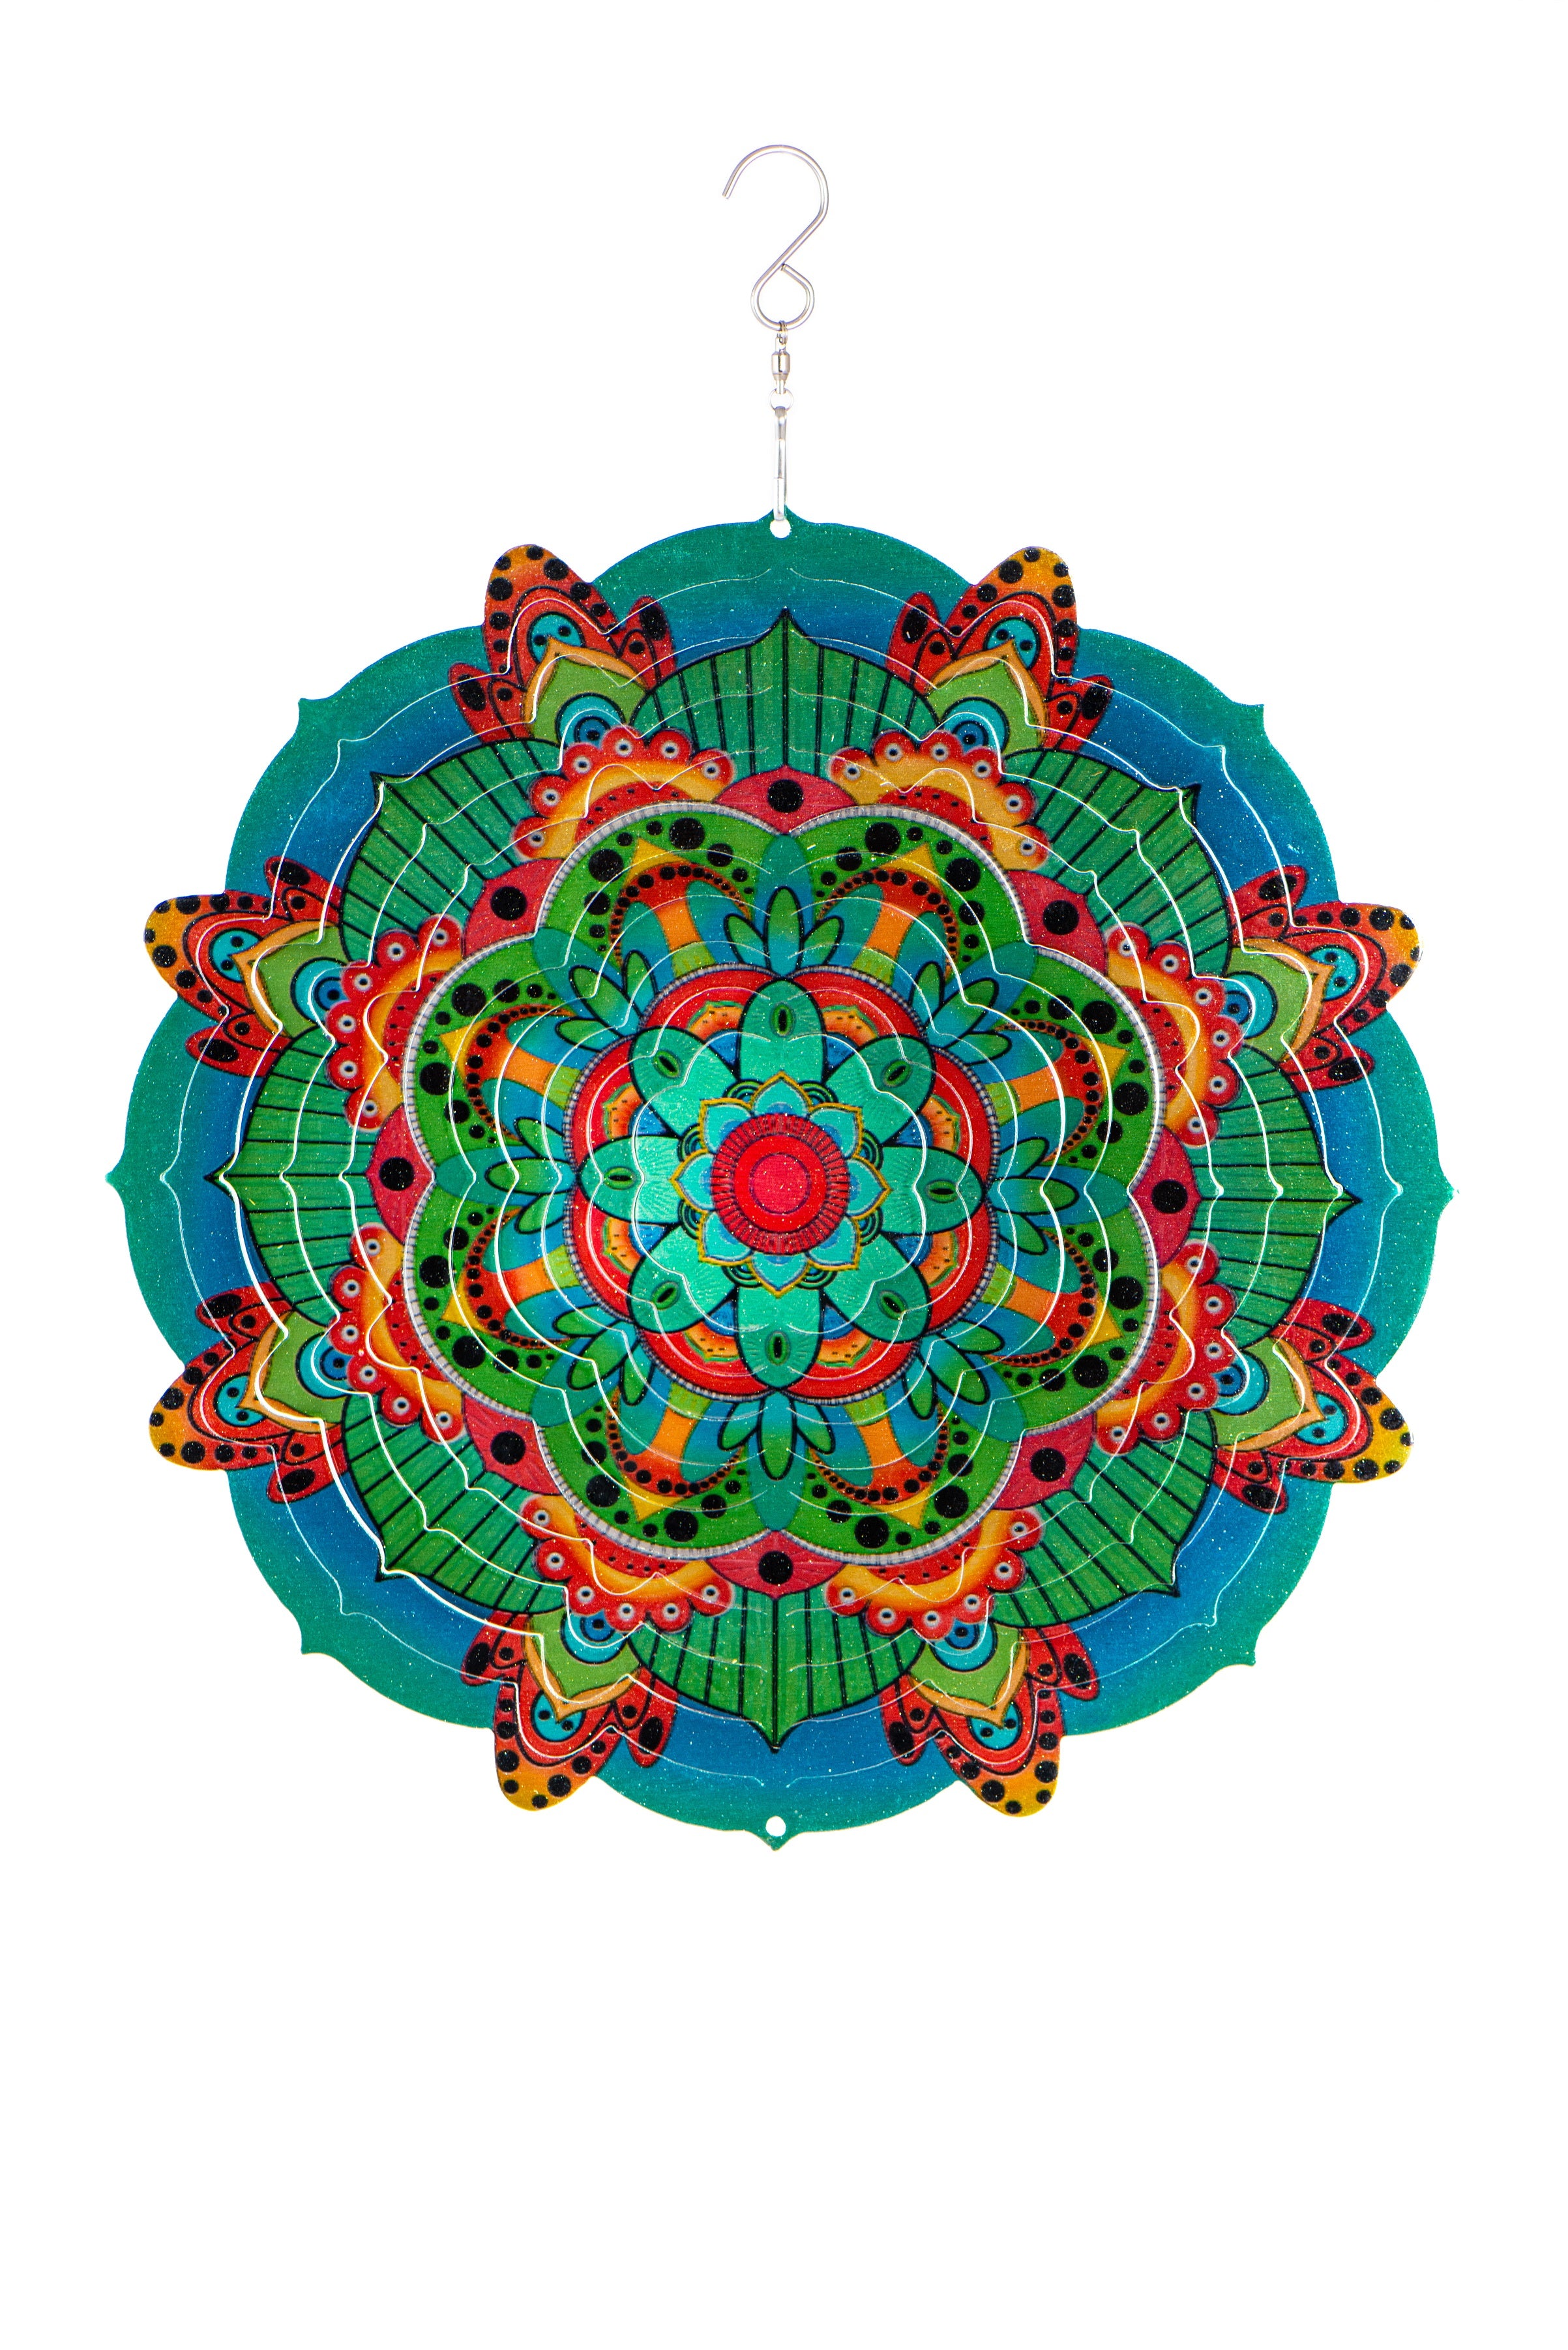 Mandala Design Wind Spinner - 12"